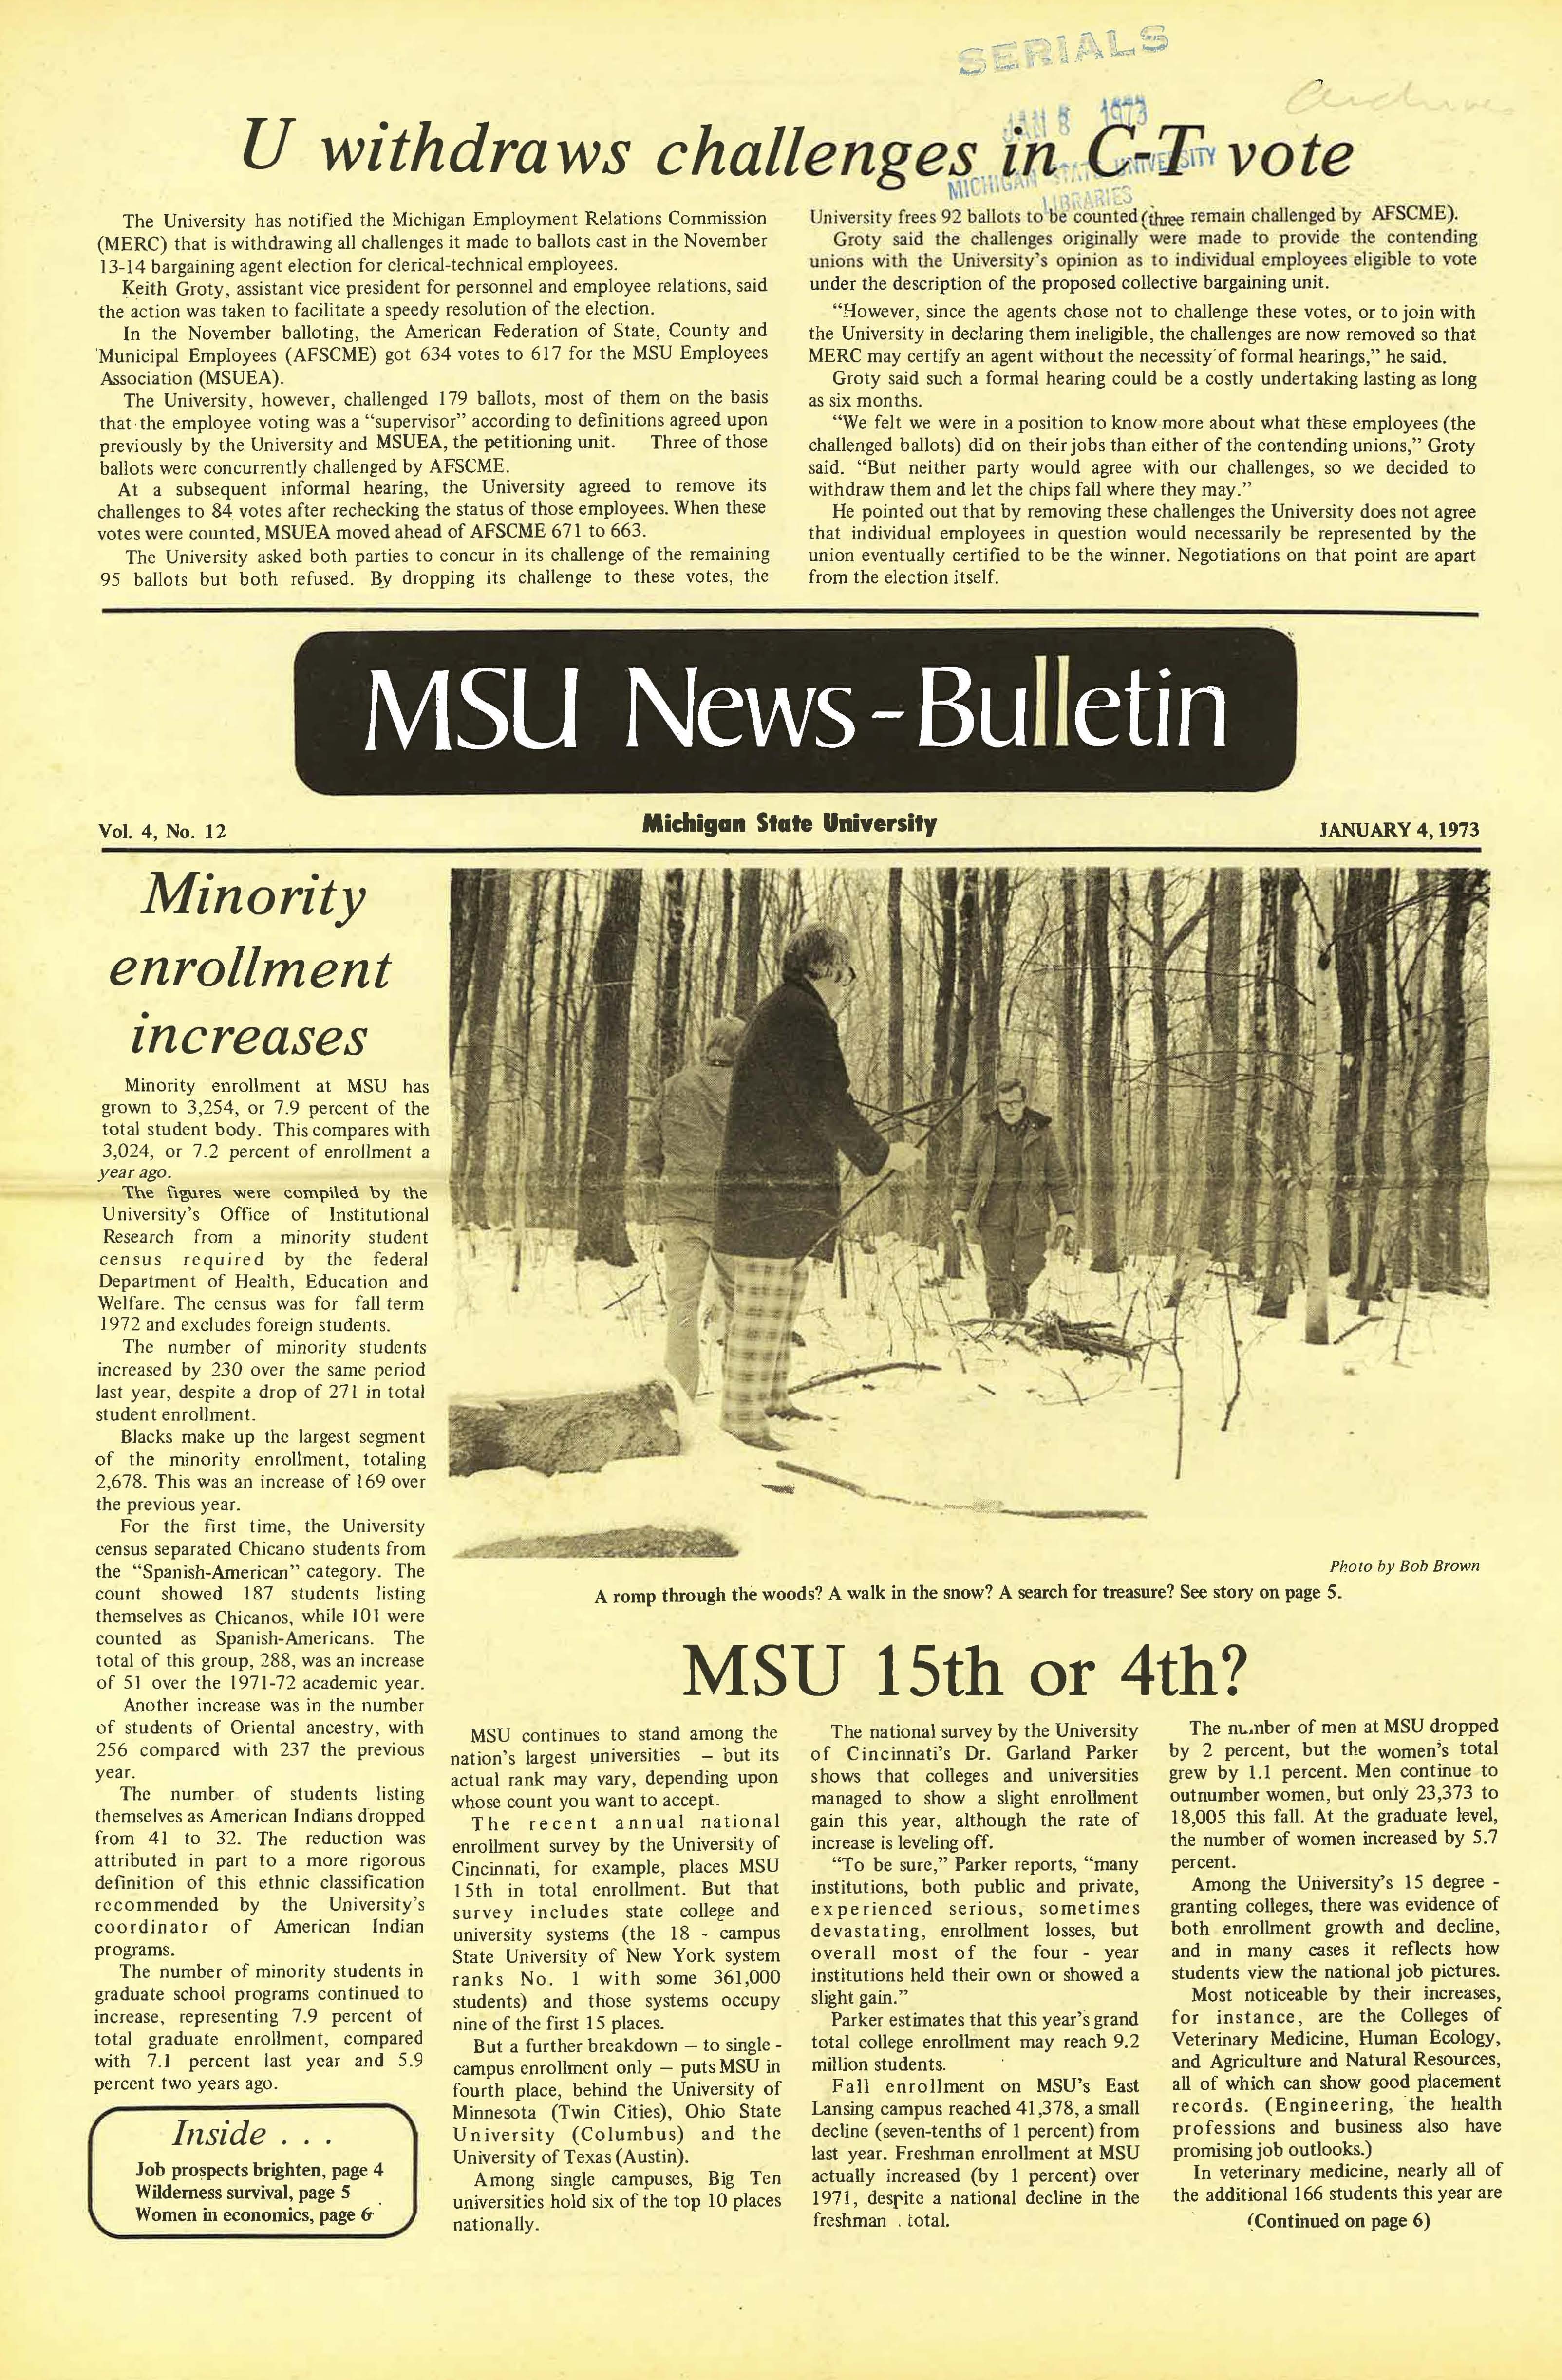 MSU News Bulletin, vol. 4, No. 29, May 17, 1973